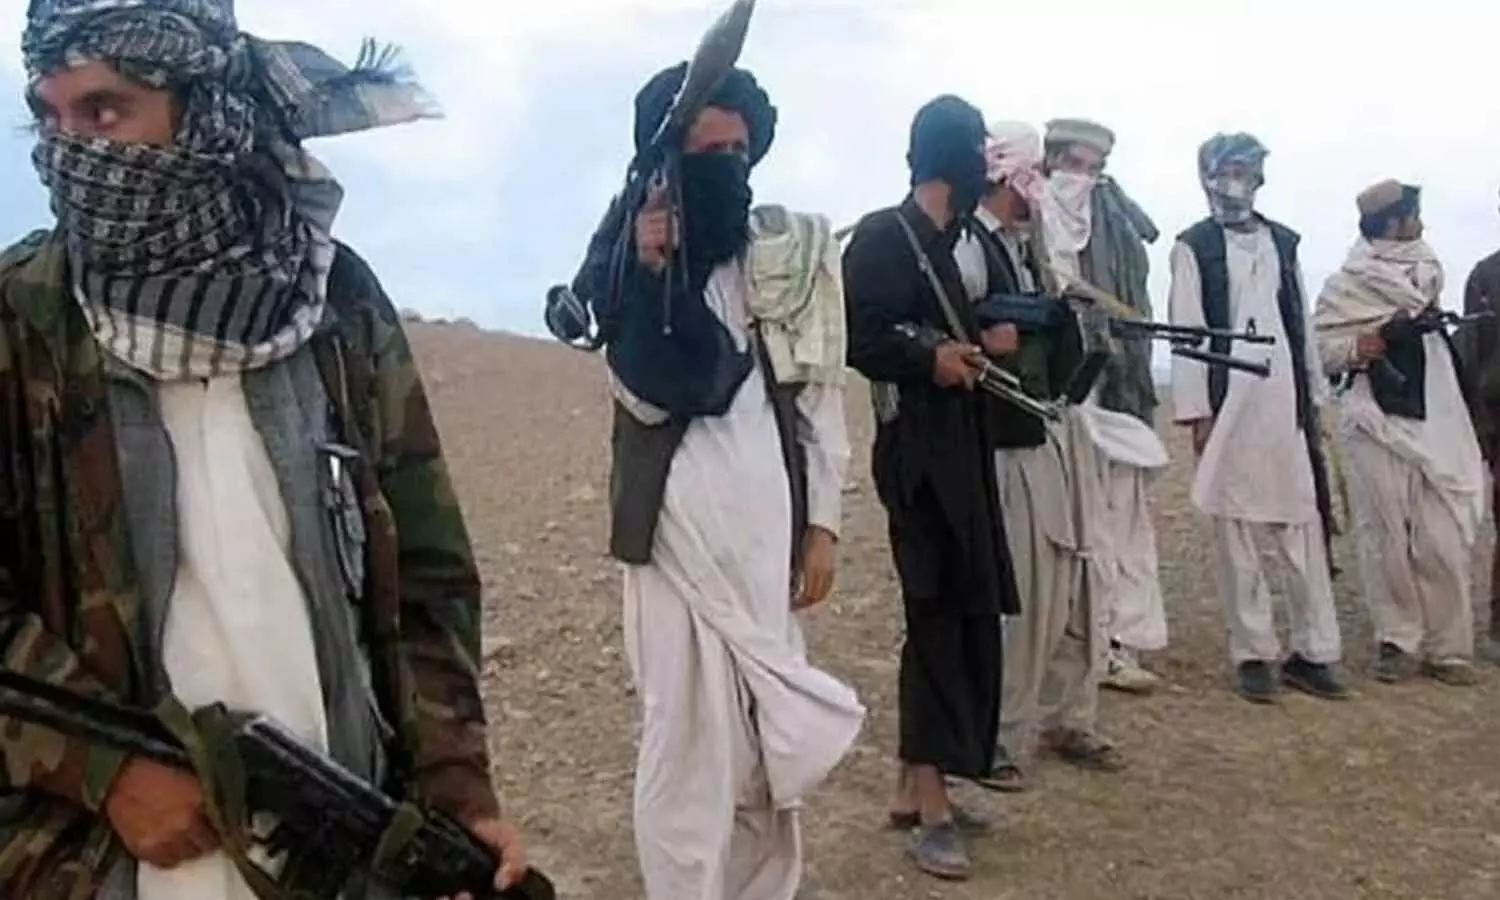 तालिबान से दहशत, आतंकियों ने युवक का सिर किया कलम, करता था अमेरिकी सेना के लिए काम